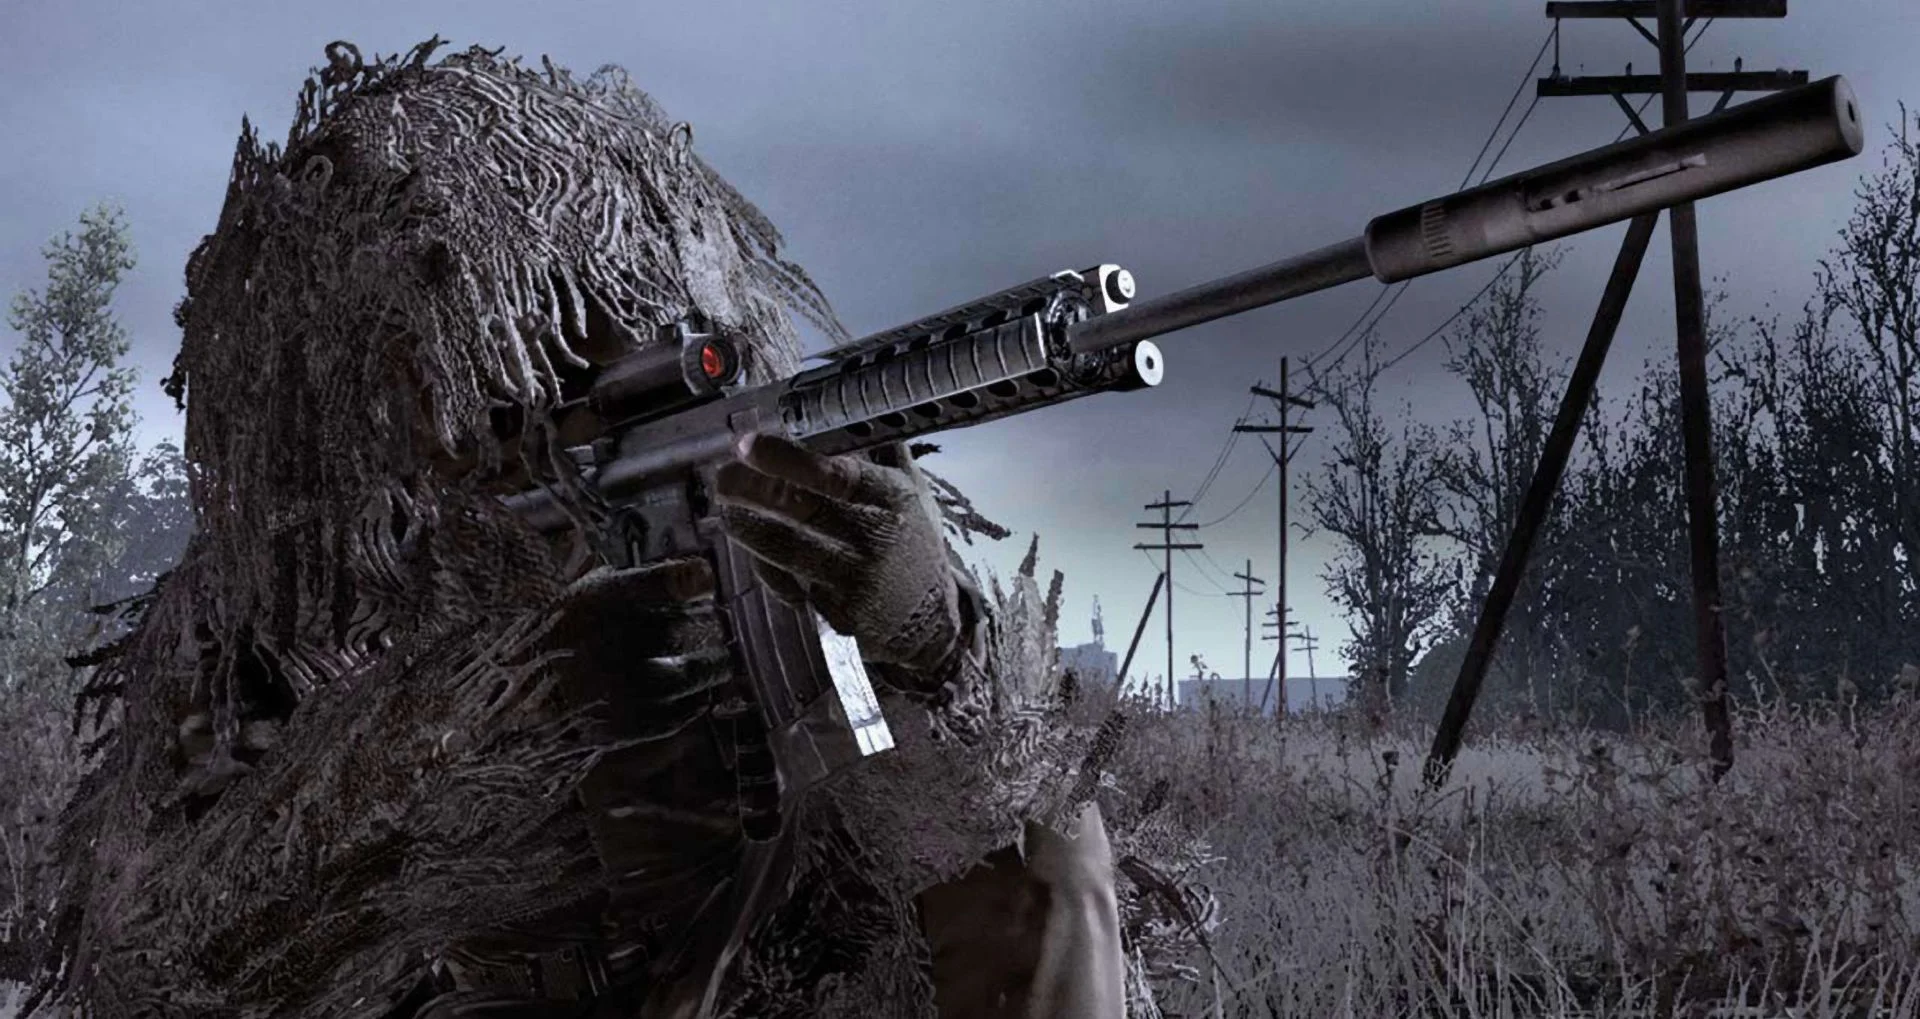 Гифка дня: секретная концовка Call of Duty 4: Modern Warfare - фото 1